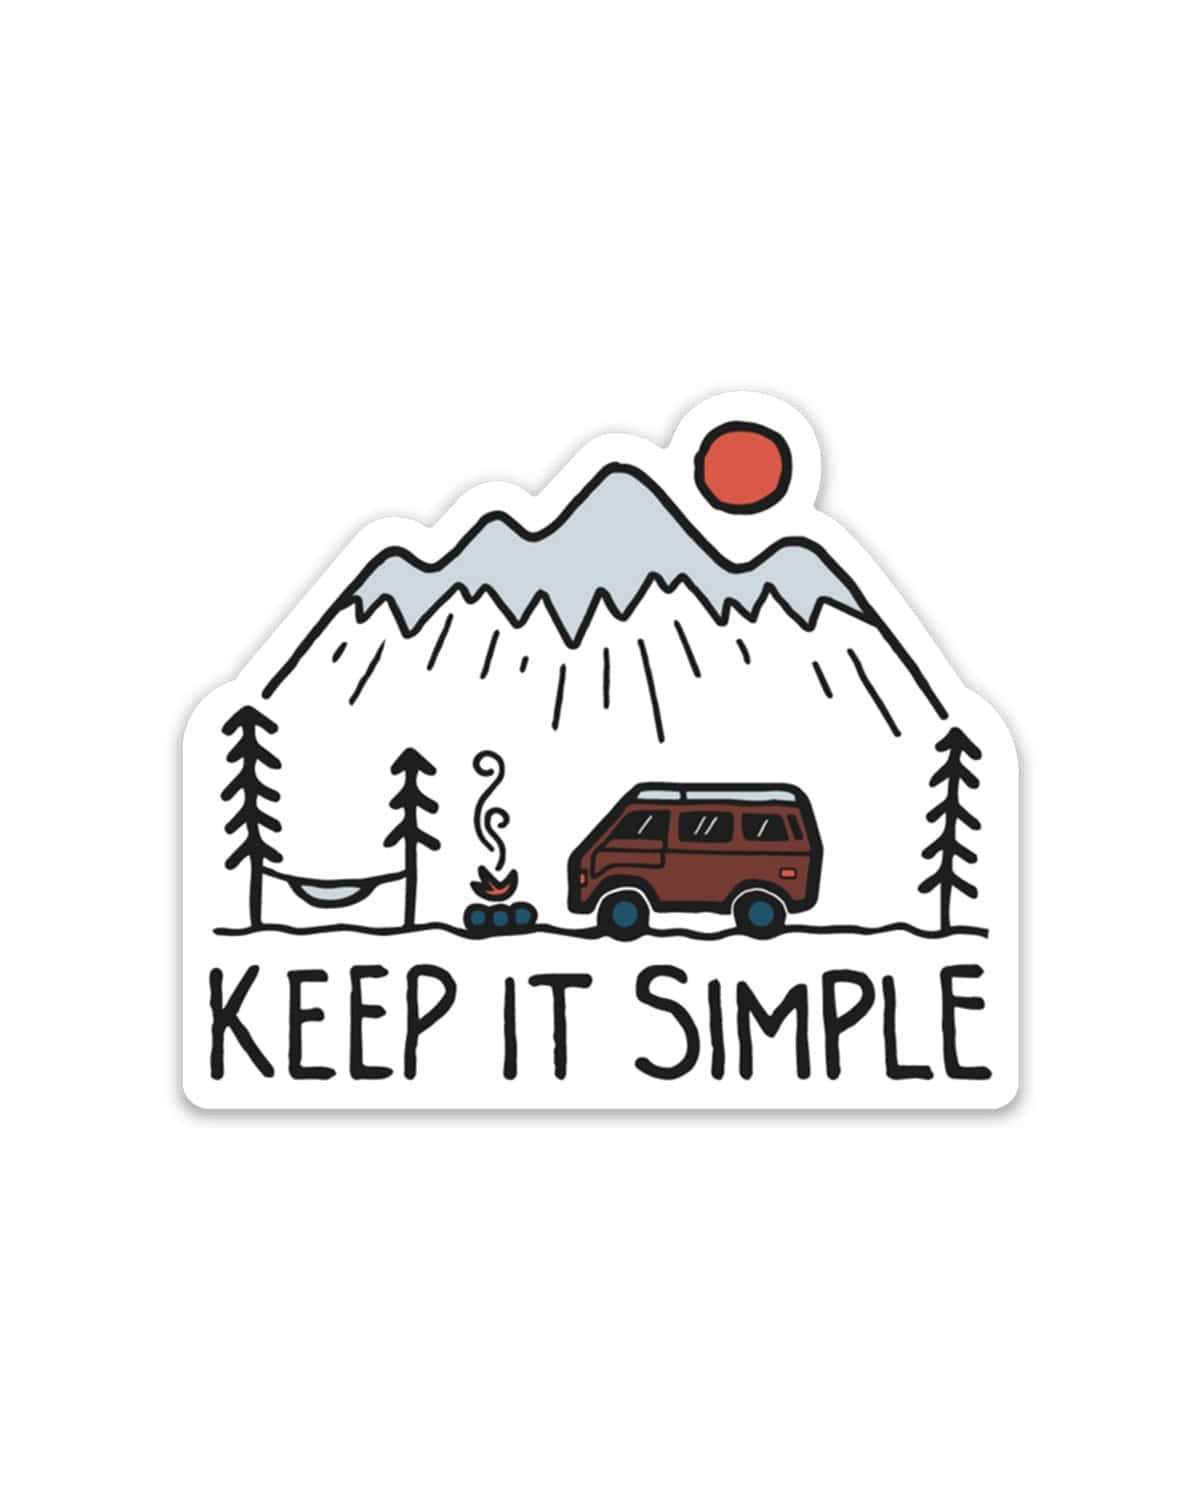 Keep it Simple | Sticker - Keep Nature Wild